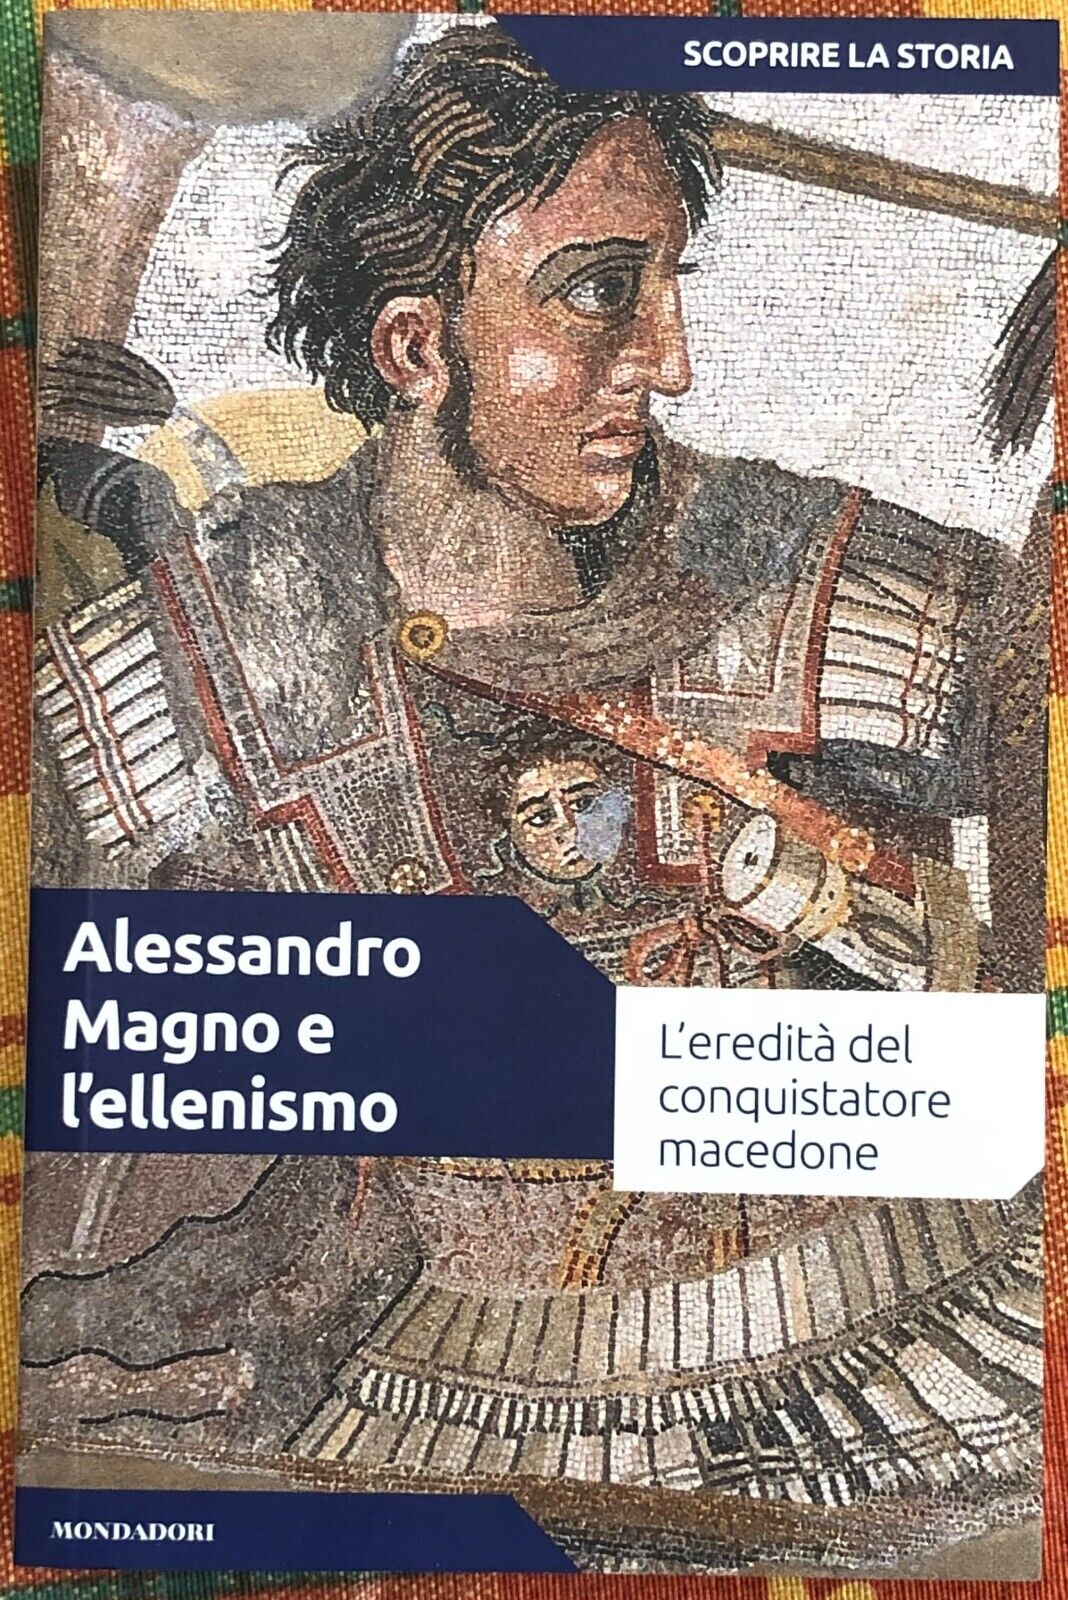 SCOPRIRE LA STORIA n. 5 - Alessandro Magno e L'ellenismo di Cristian Mir Serran